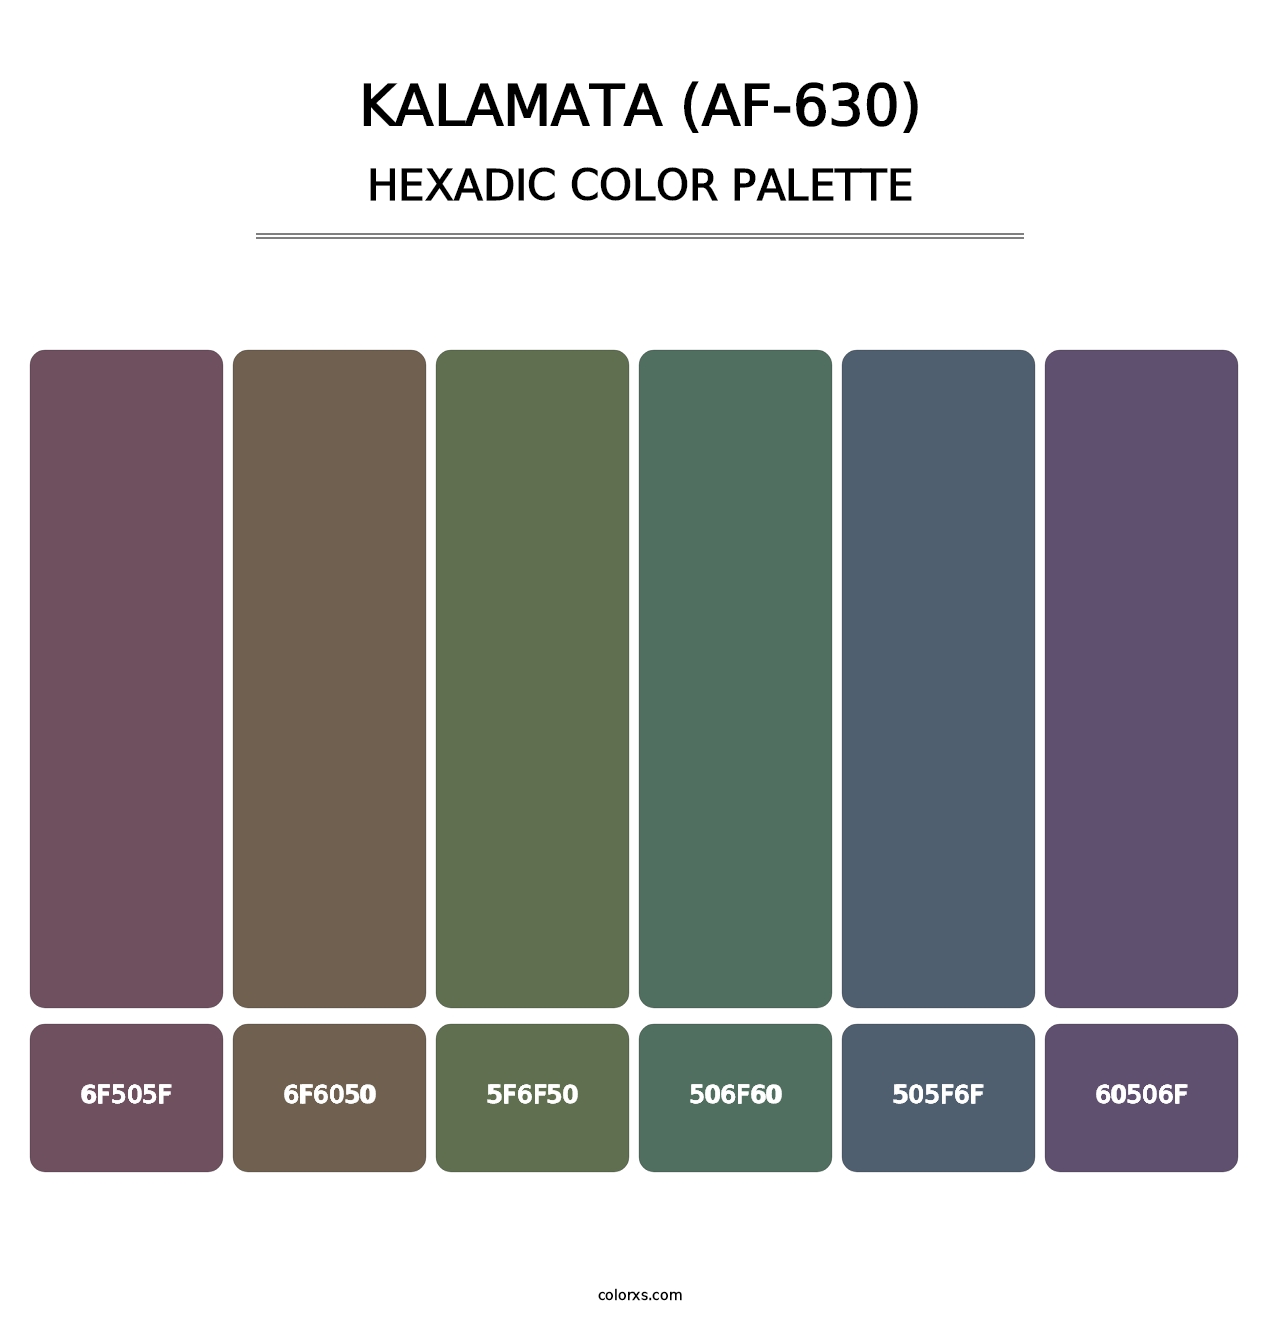 Kalamata (AF-630) - Hexadic Color Palette